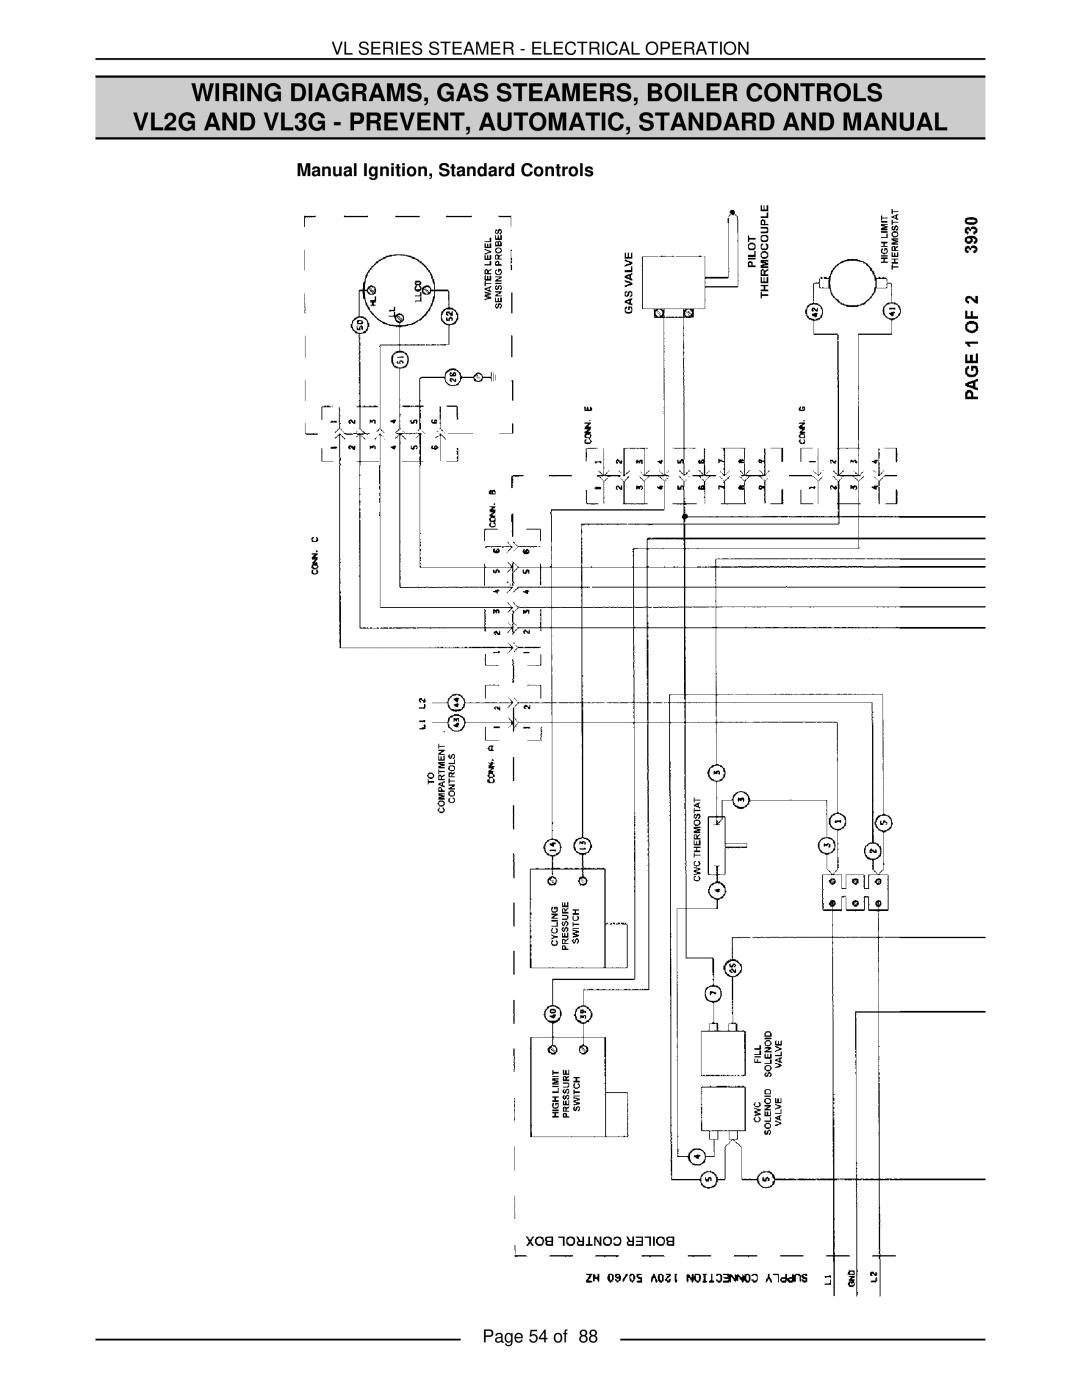 Vulcan-Hart VL3GPS, VL3GMS, VL2GMS, VL3GAS, VL2GAS, VL2GSS, VL3GSS, VL2GPS Vl Series Steamer - Electrical Operation, Page 54 of 